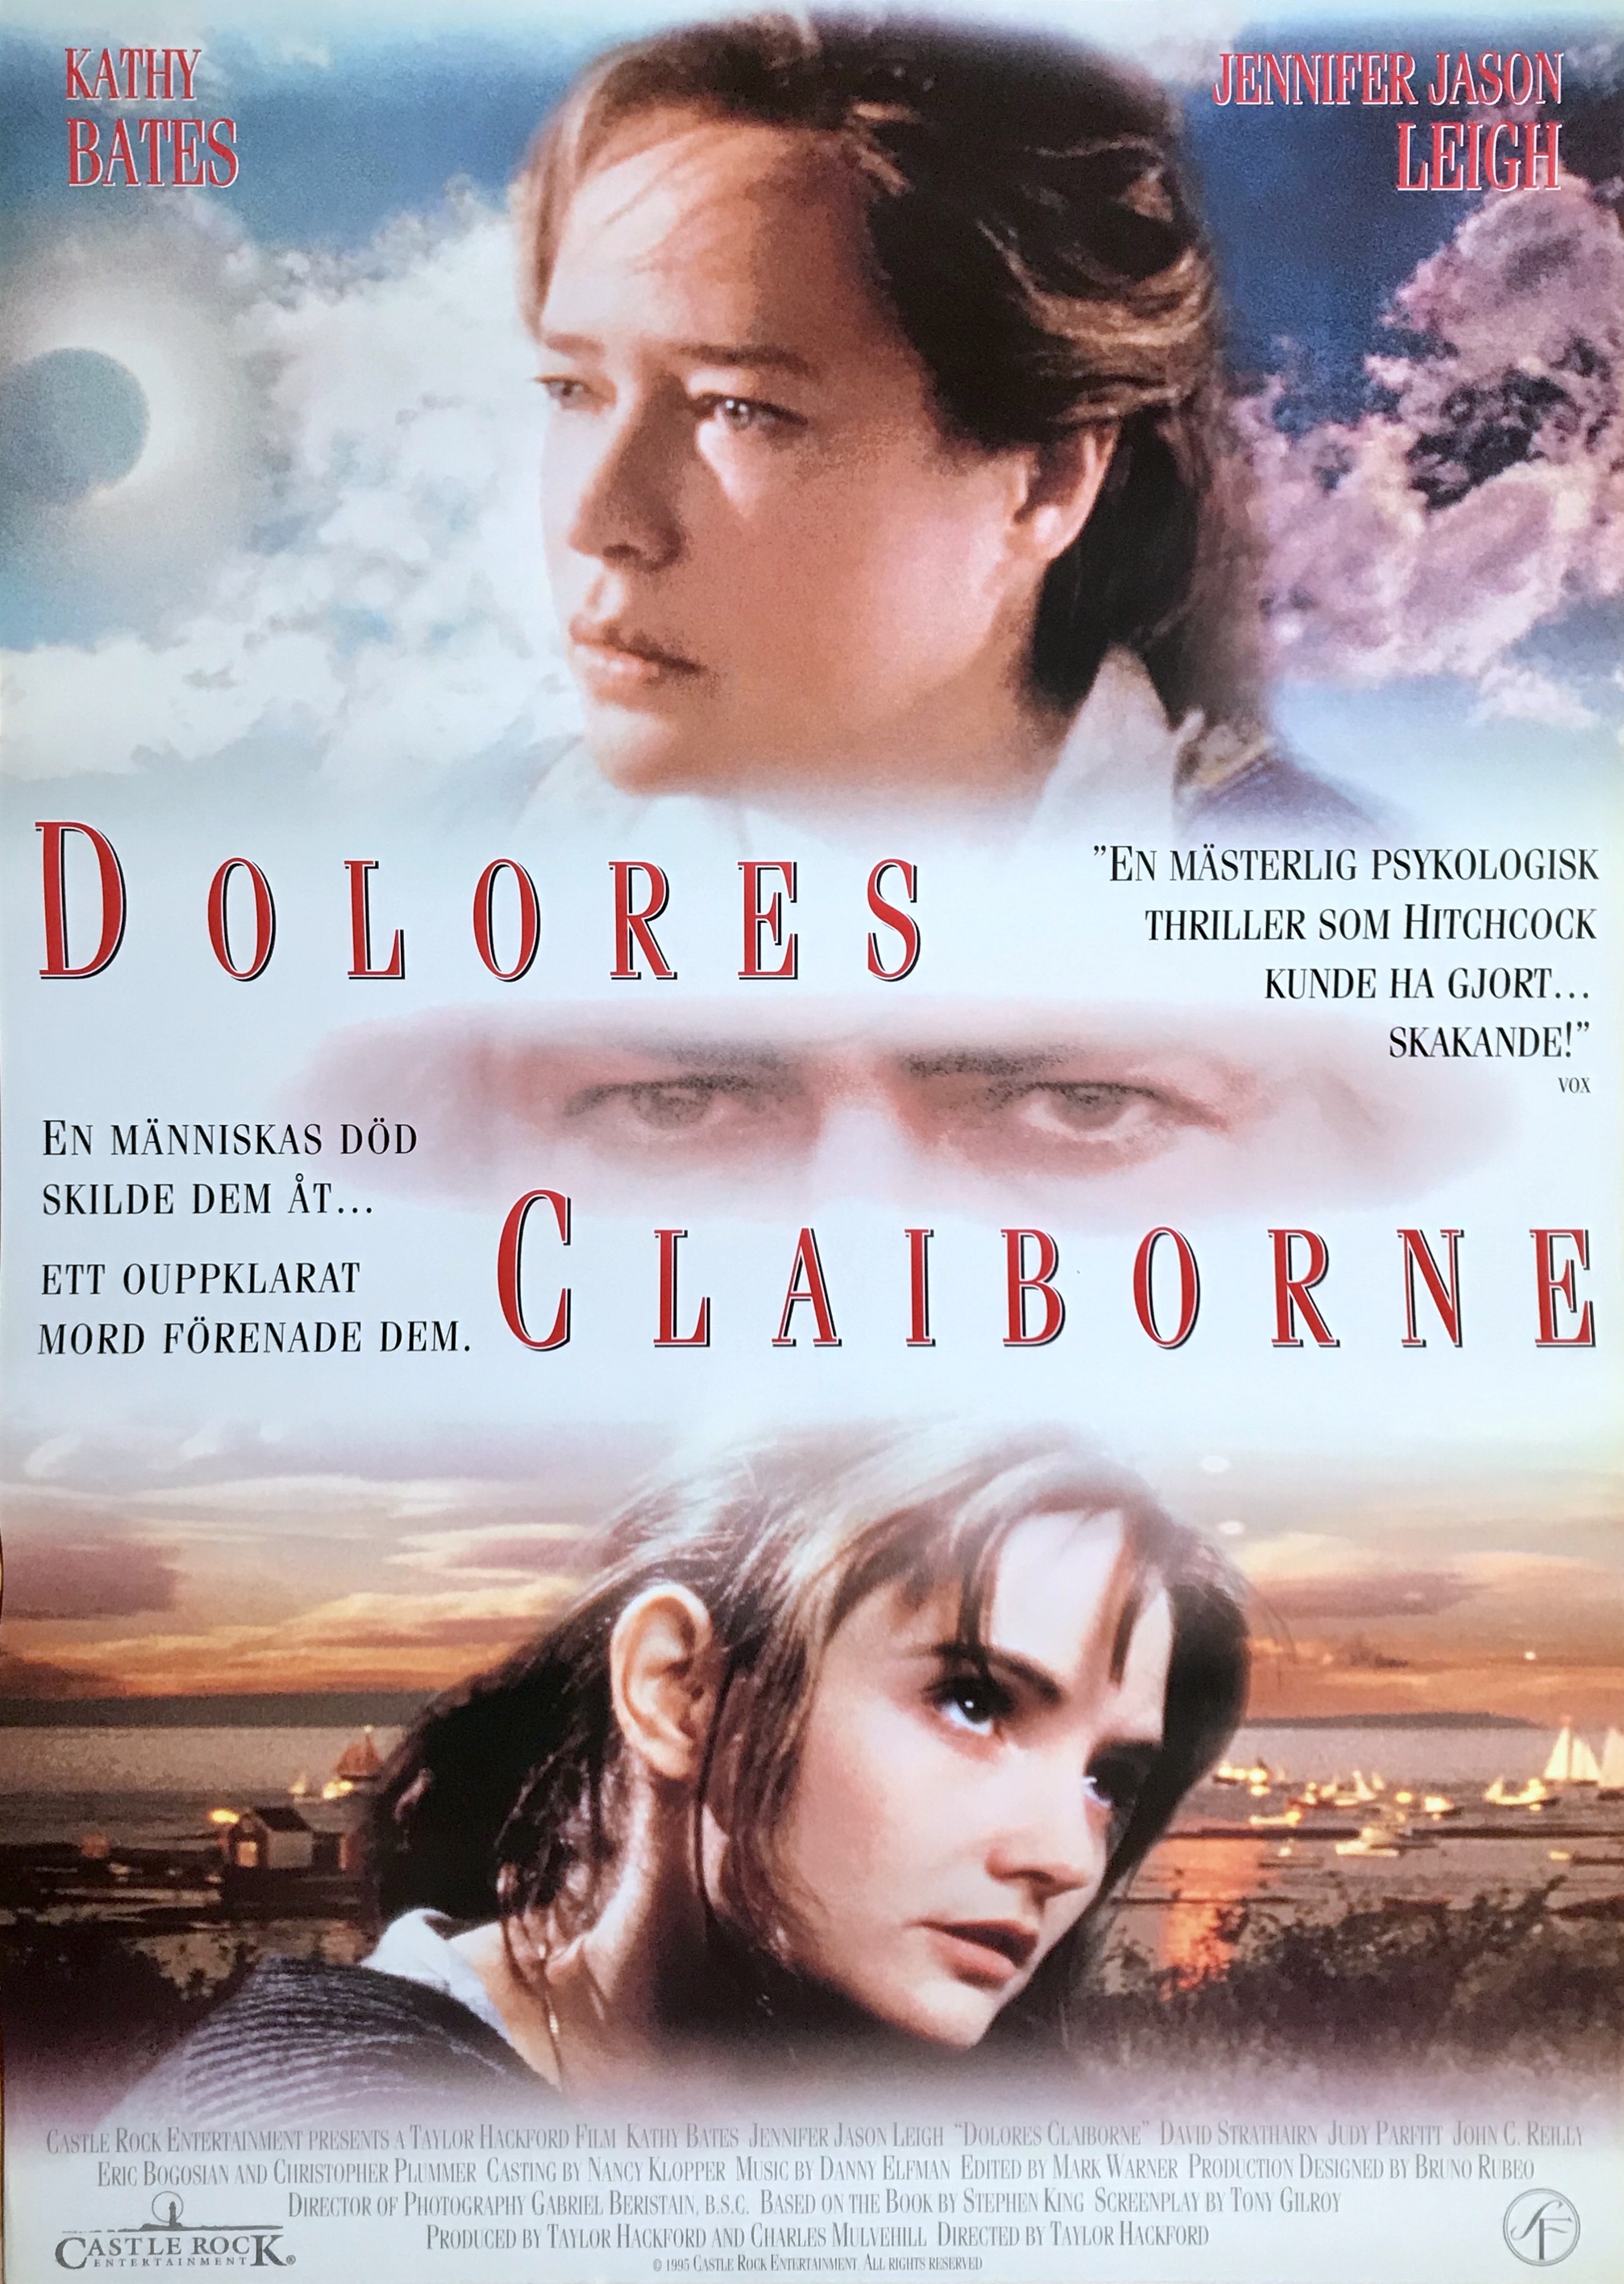 1995 Dolores Claiborne